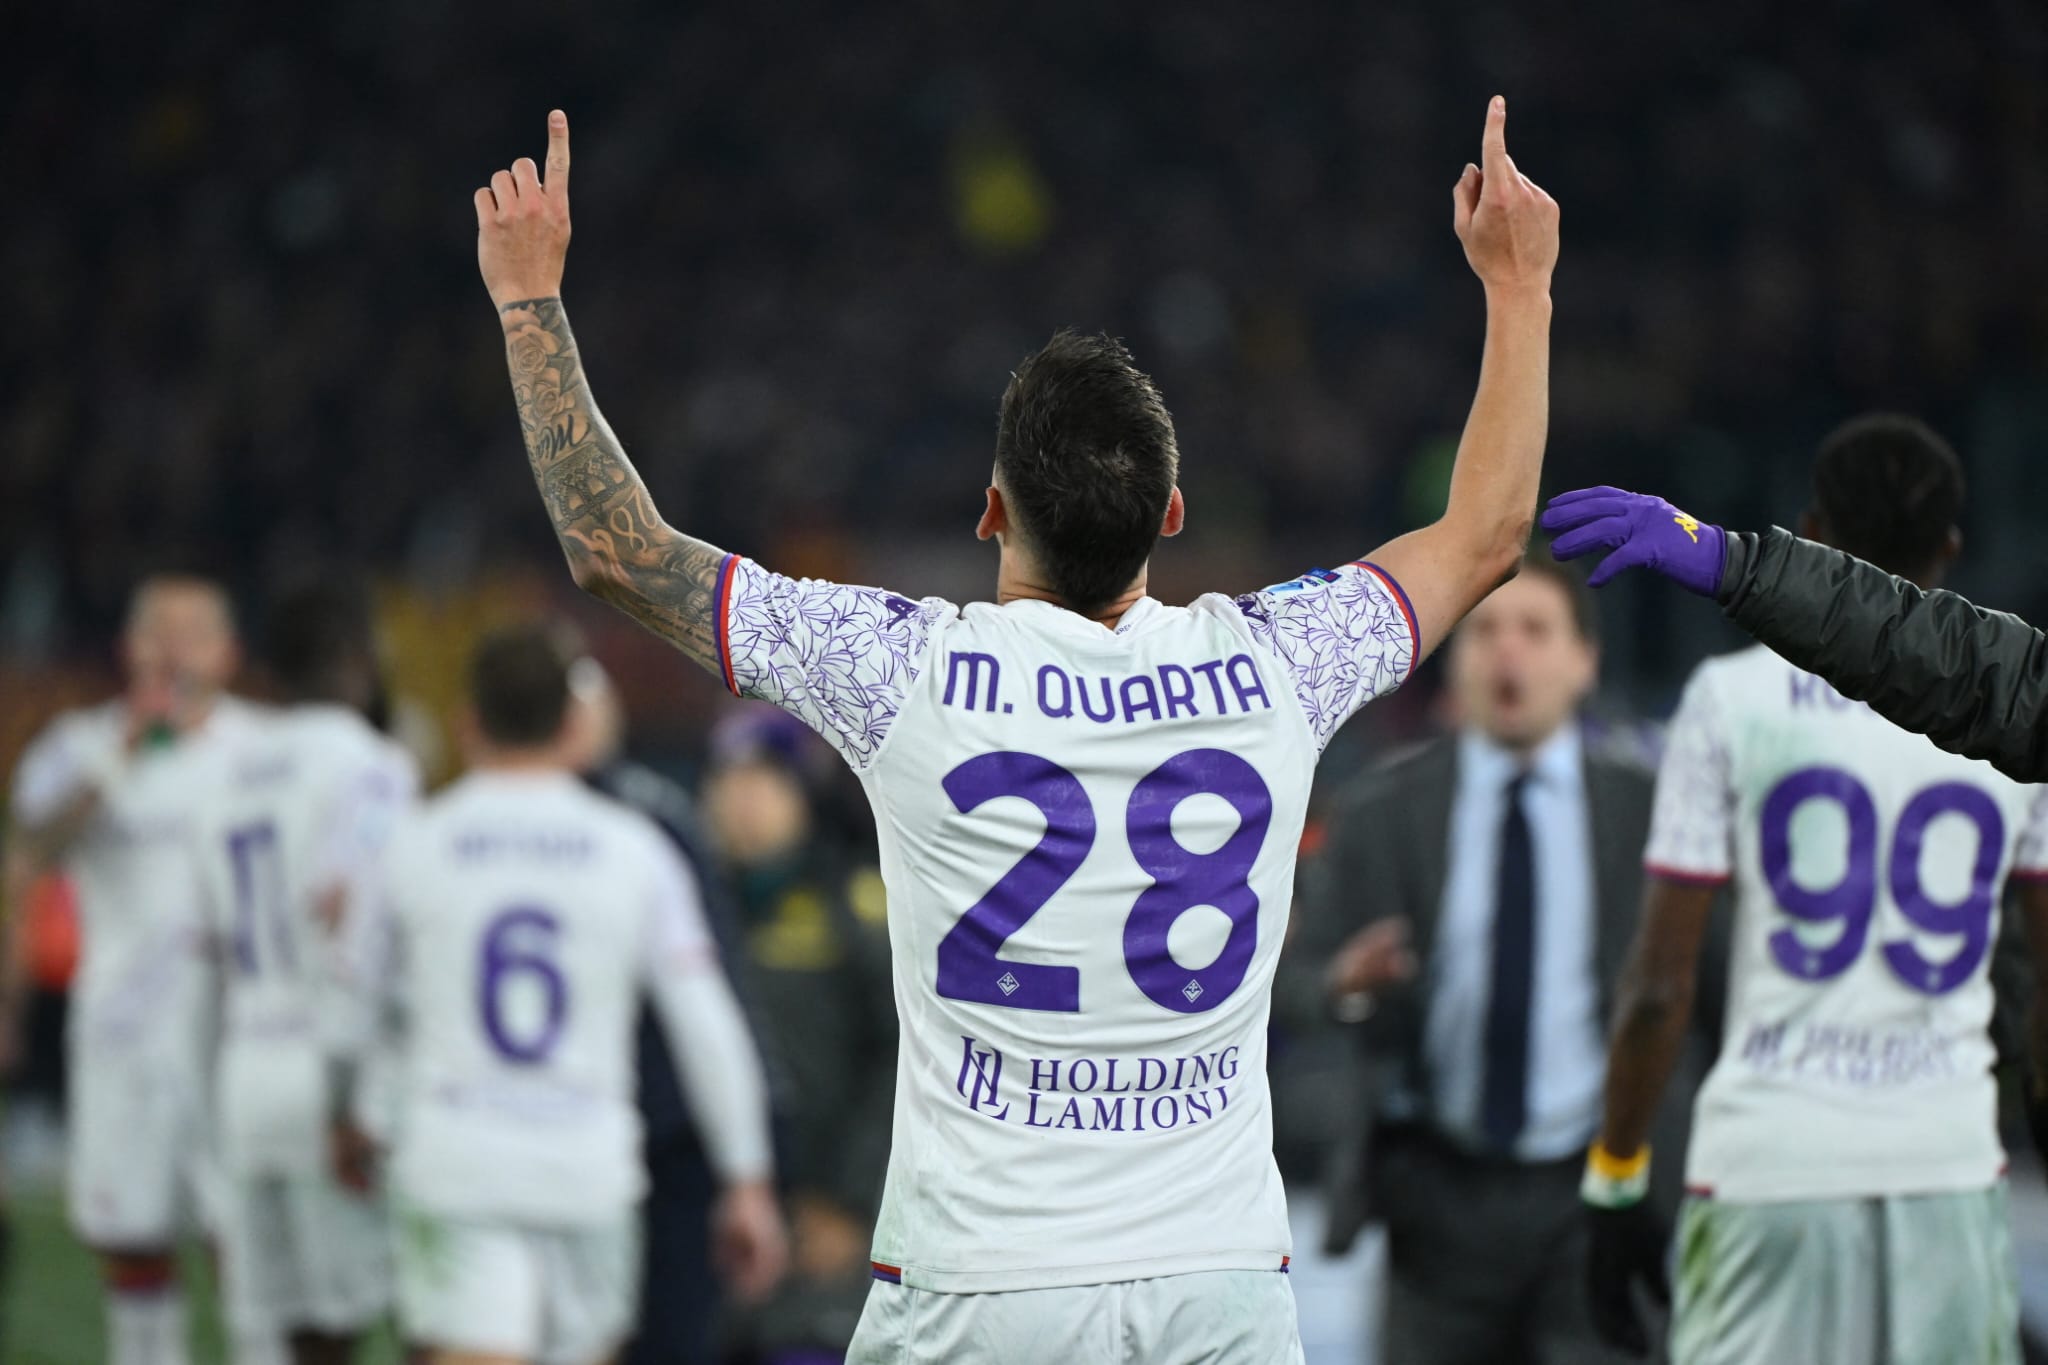 Corriere dello Sport: “La Fiorentina esce dal campo innervosita, non ha saputo sferrare il colpo del ko”